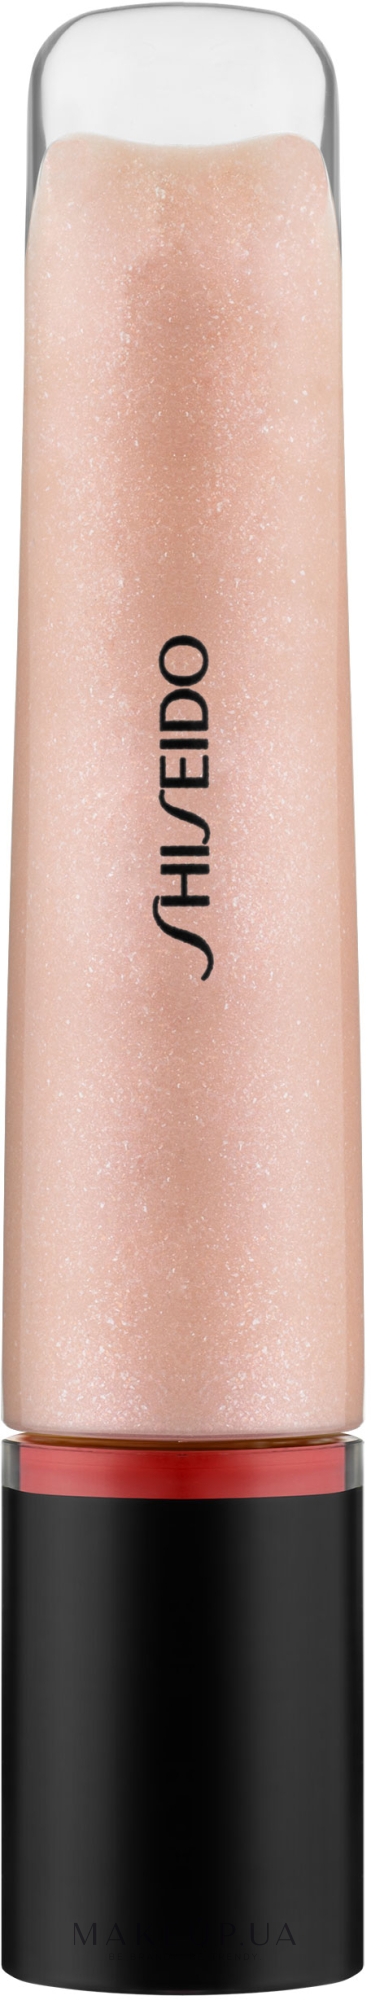 Блеск для губ - Shiseido Shimmer Gel Gloss — фото 02 - Toki Nude